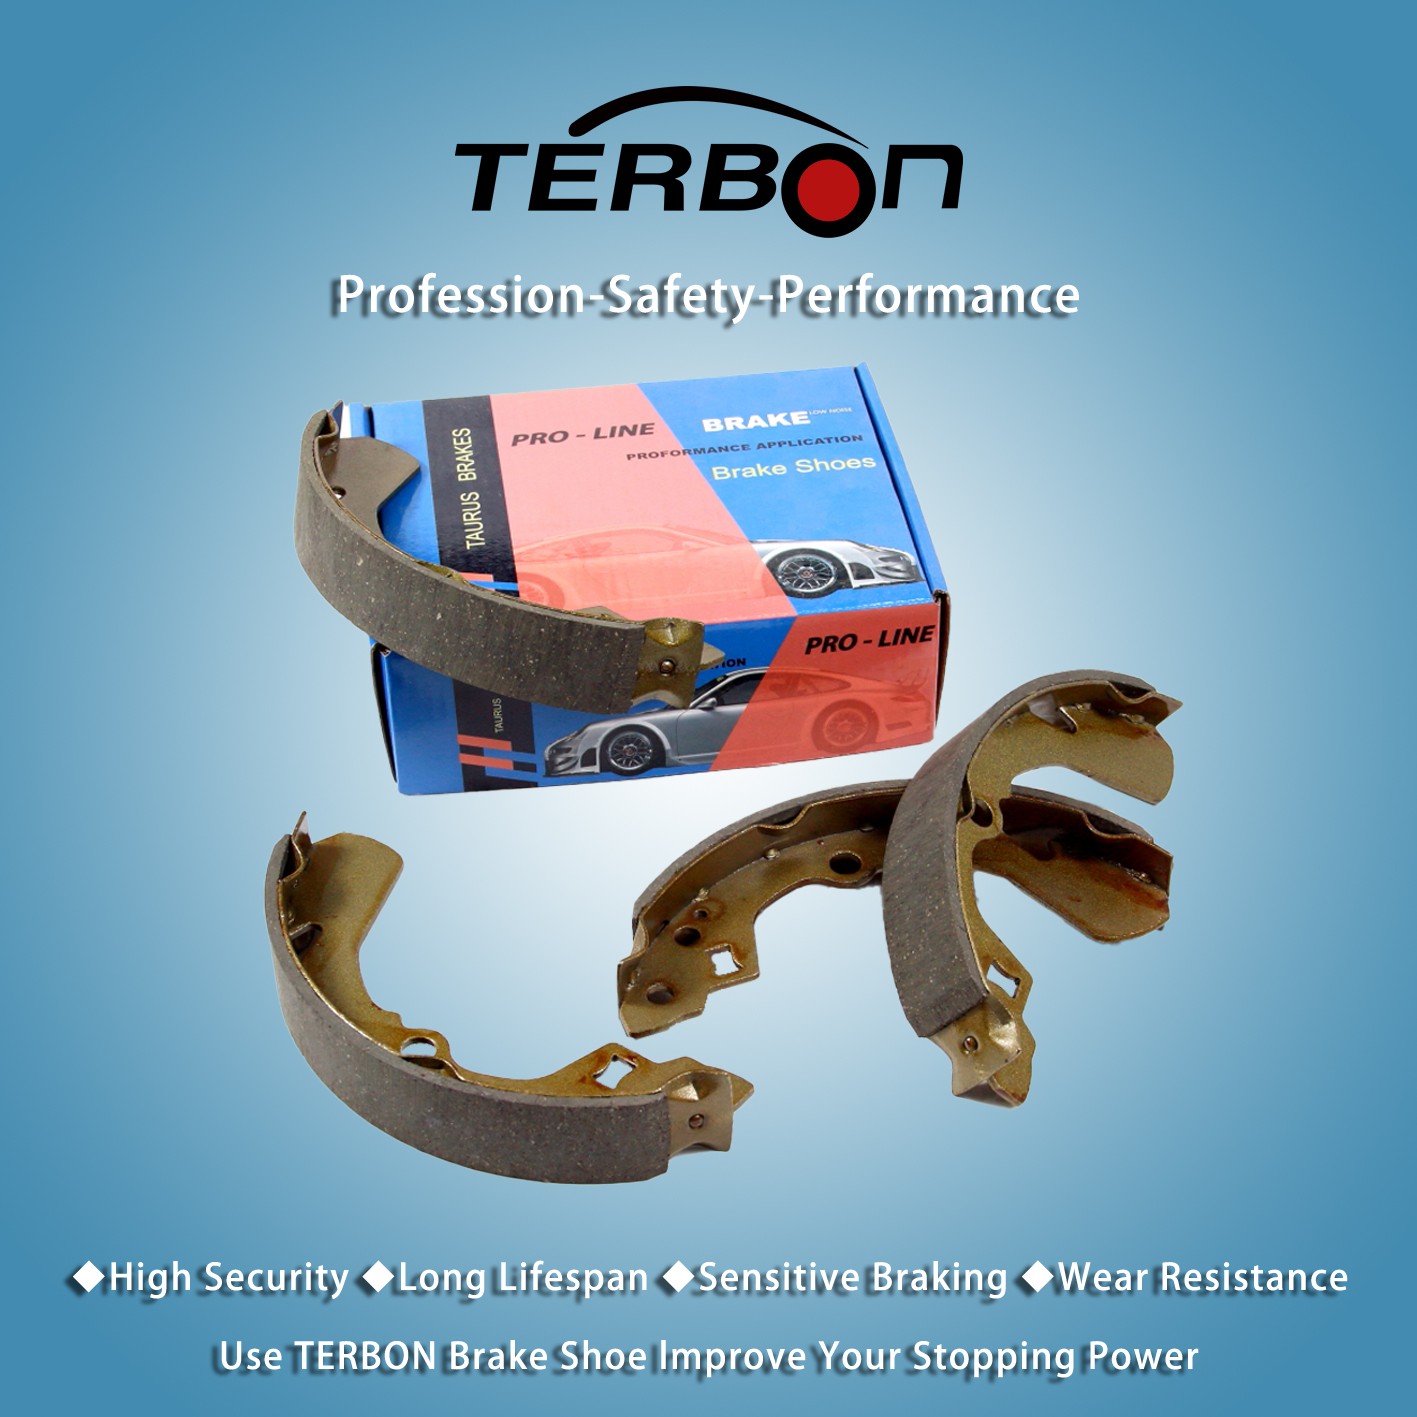 Terbon uvádí na trh nové vysoce výkonné brzdové čelisti přední nápravy pro zlepšení brzdného výkonu vozidla